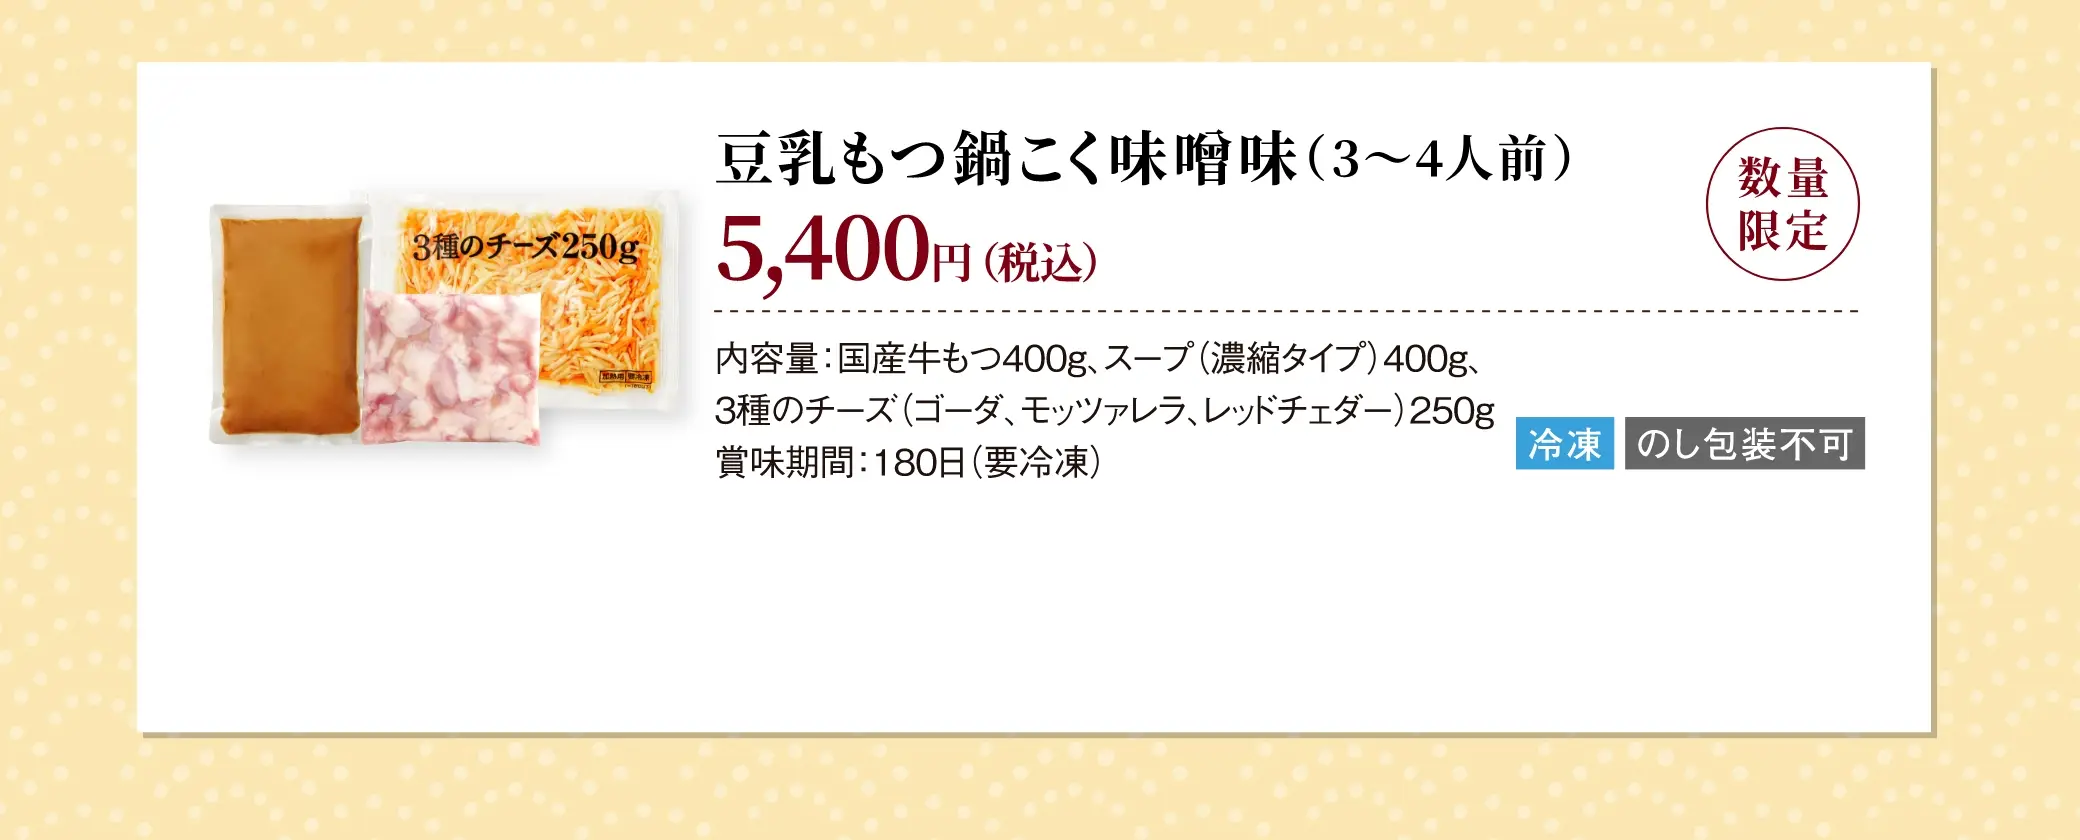 豆乳もつ鍋こく味噌味(3~4人前) 5,400円(税込)